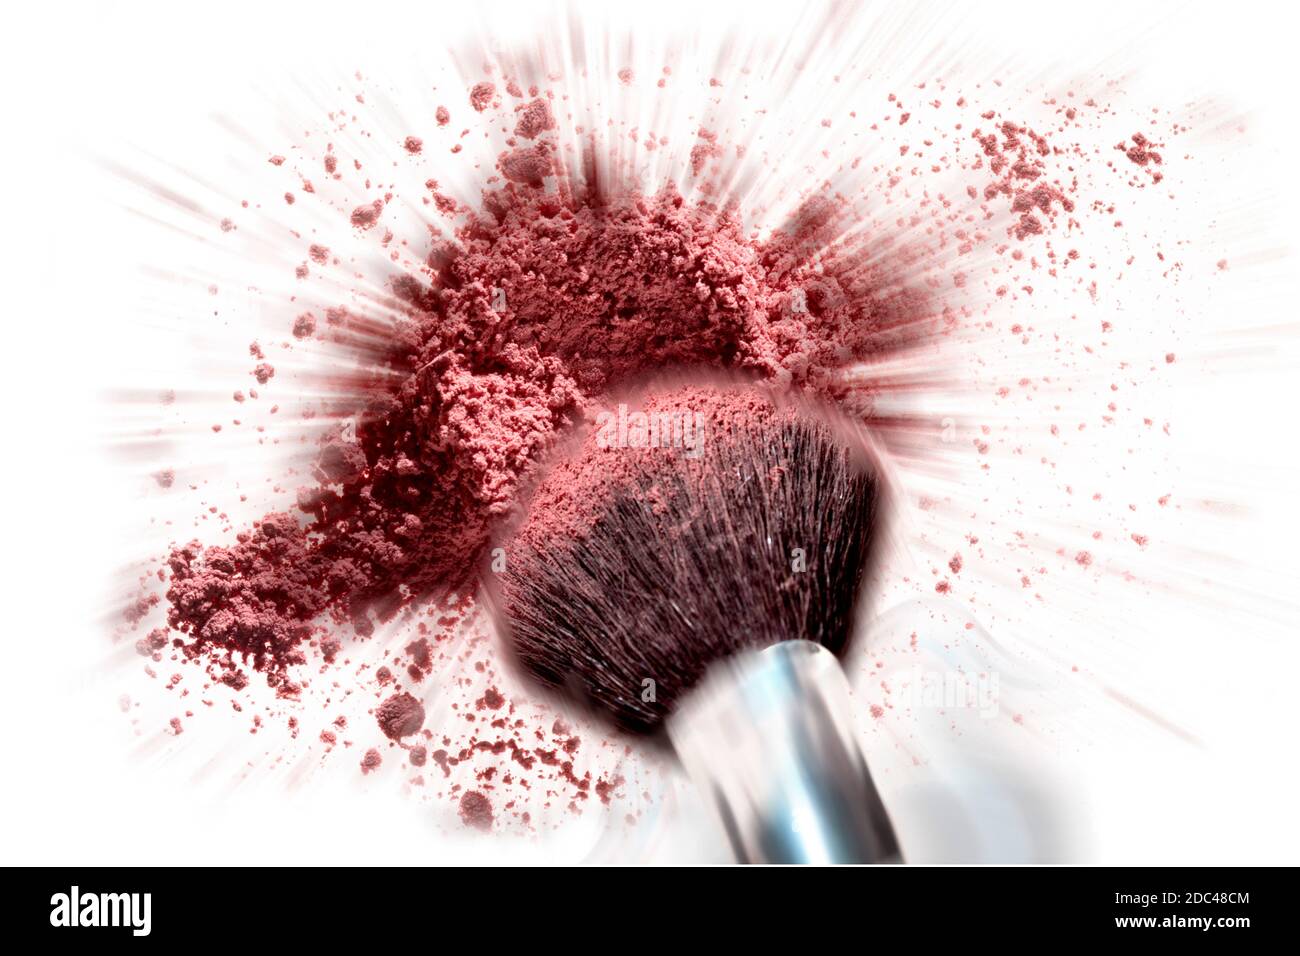 Spazzola cosmetica che si immerge in un mucchio di polvere di arrossamento che esplode. Il movimento viene registrato in questa fotografia di studio a colori orizzontale. Foto Stock